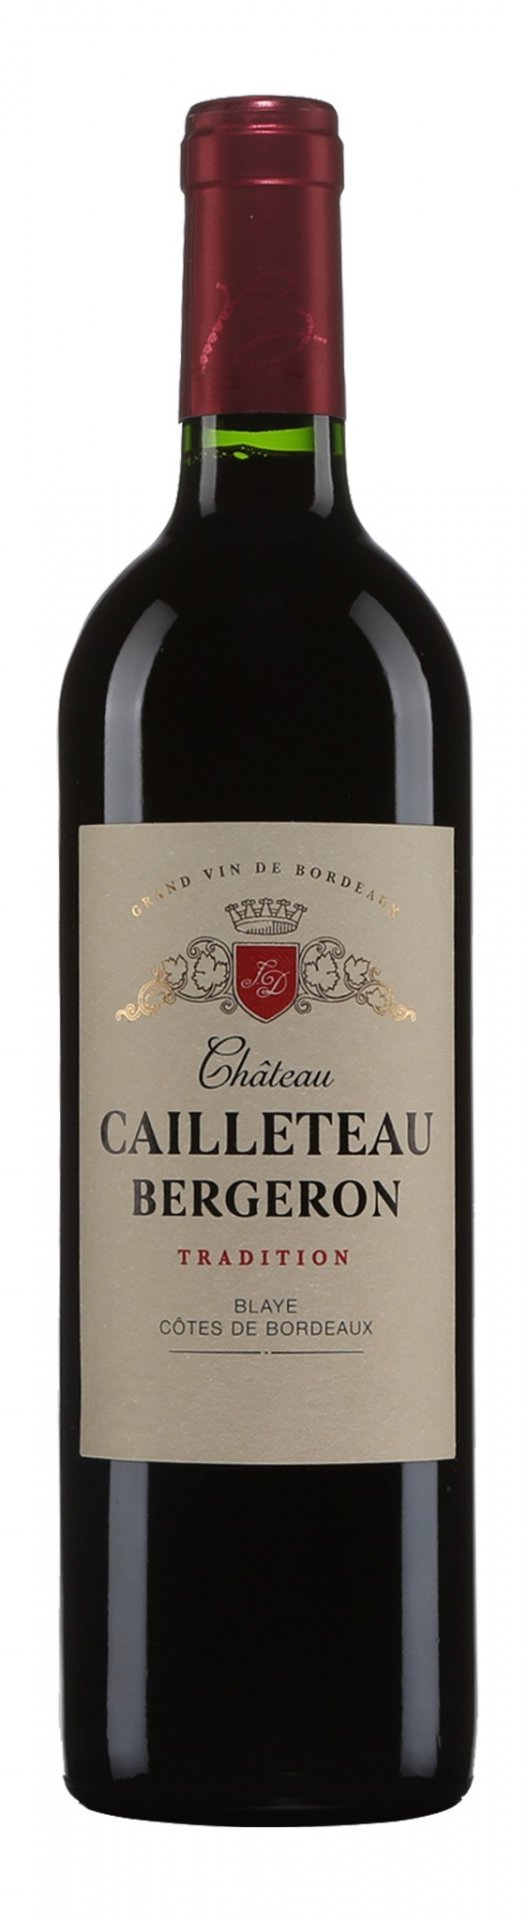 Château Cailleteau Bergeron Blaye Côtes de Bordeaux